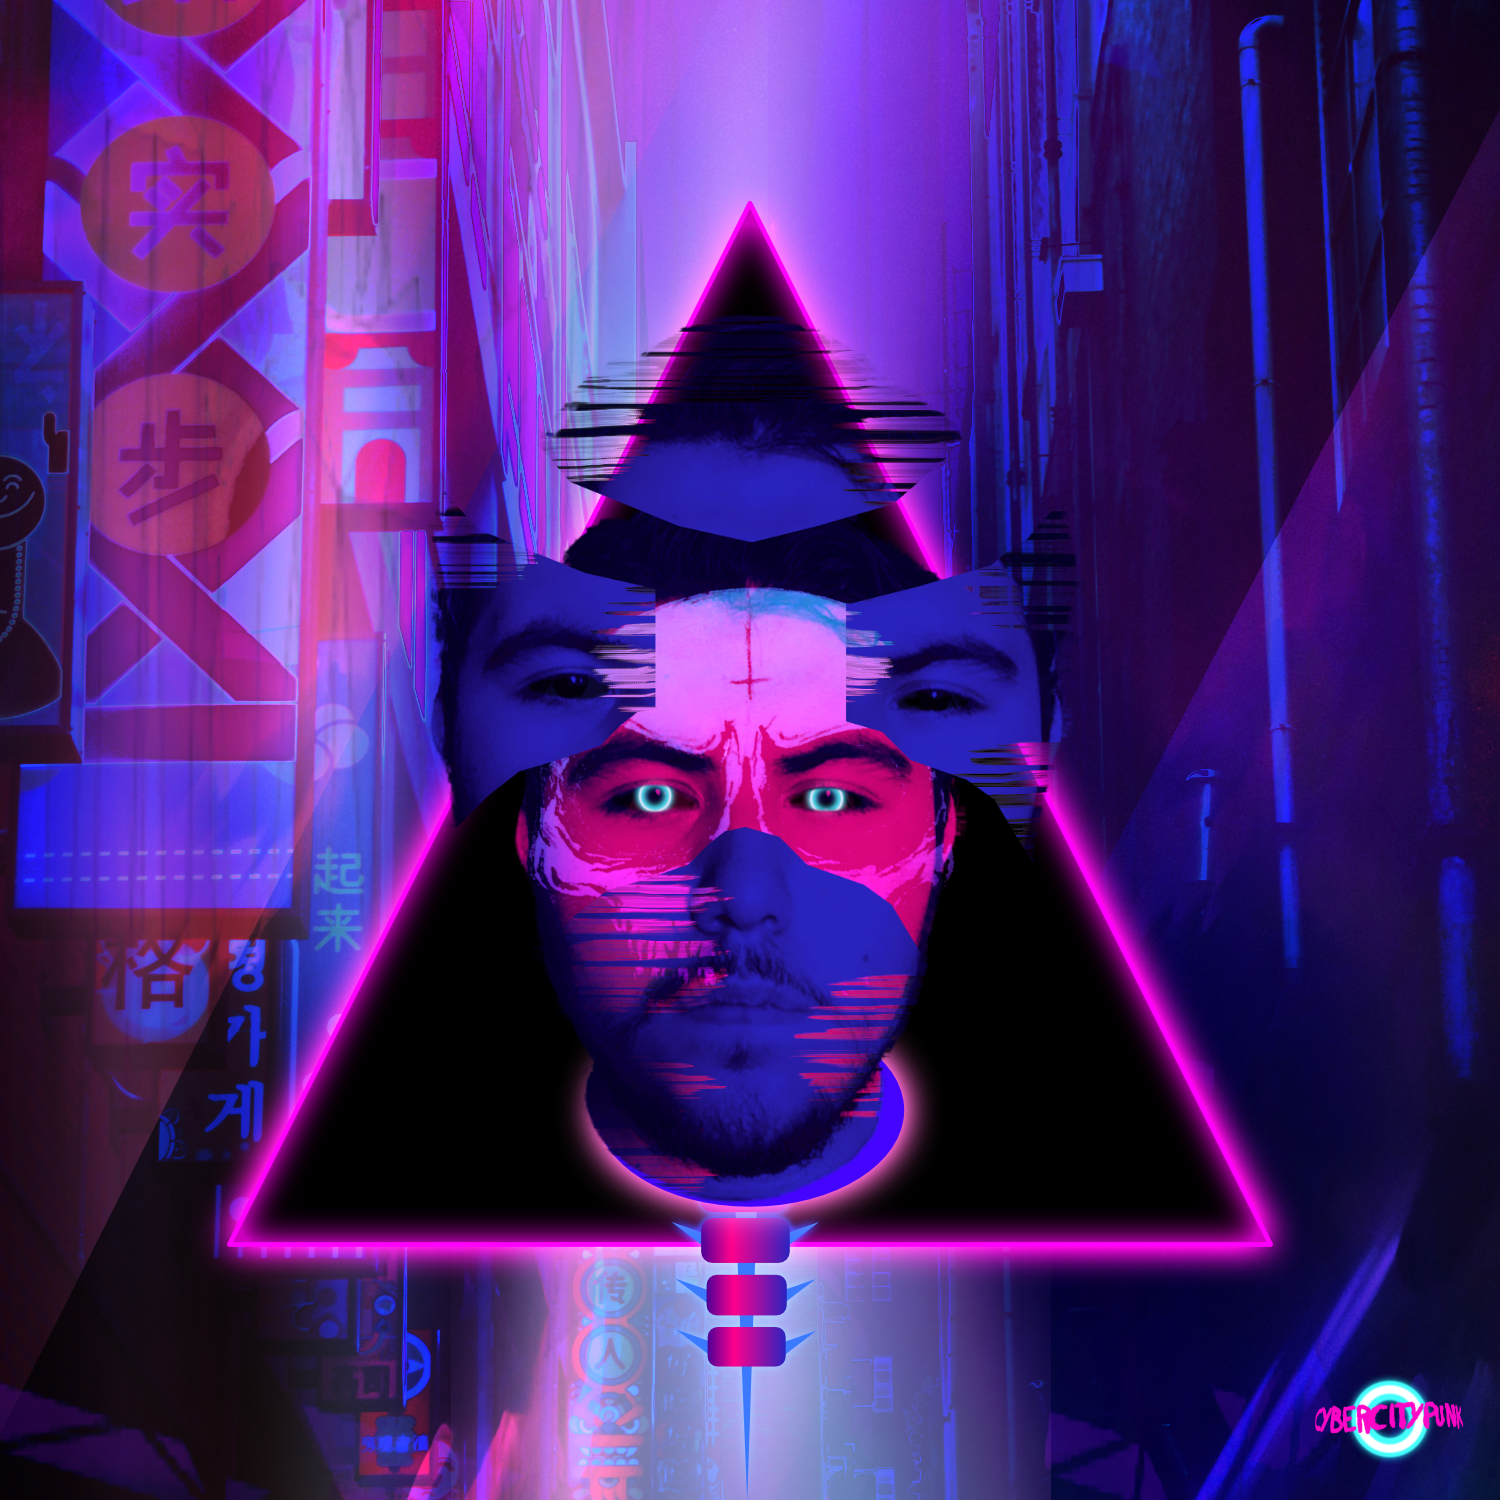 cyberpunk city neon art.jpg